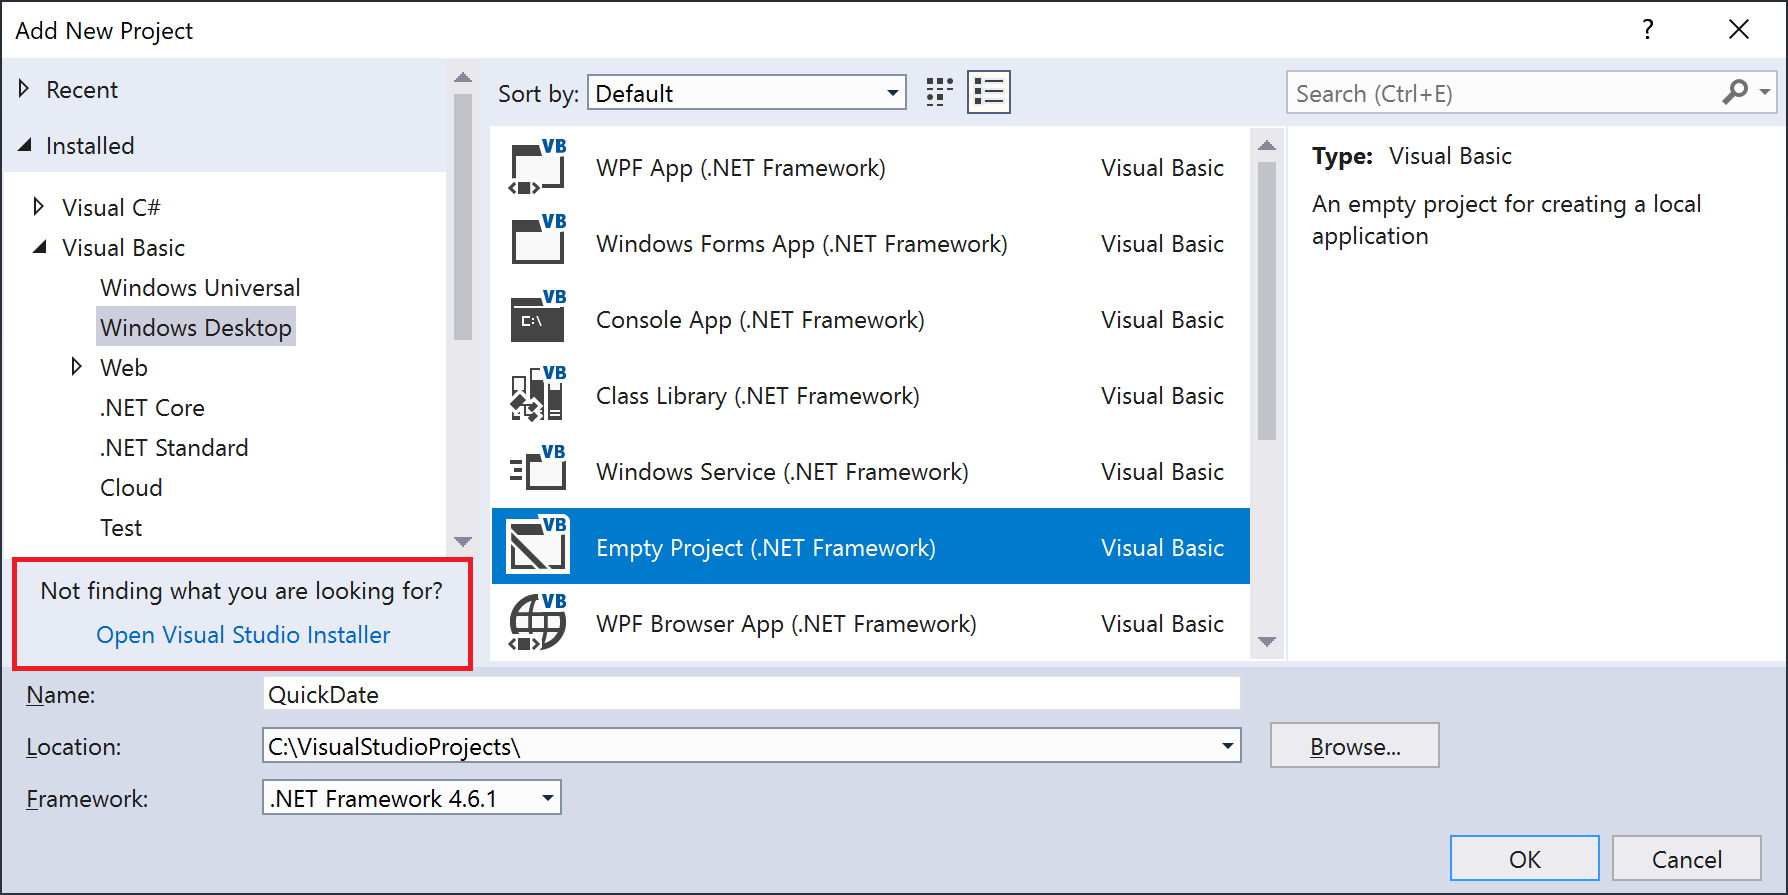 Open Visual Studio Installer link